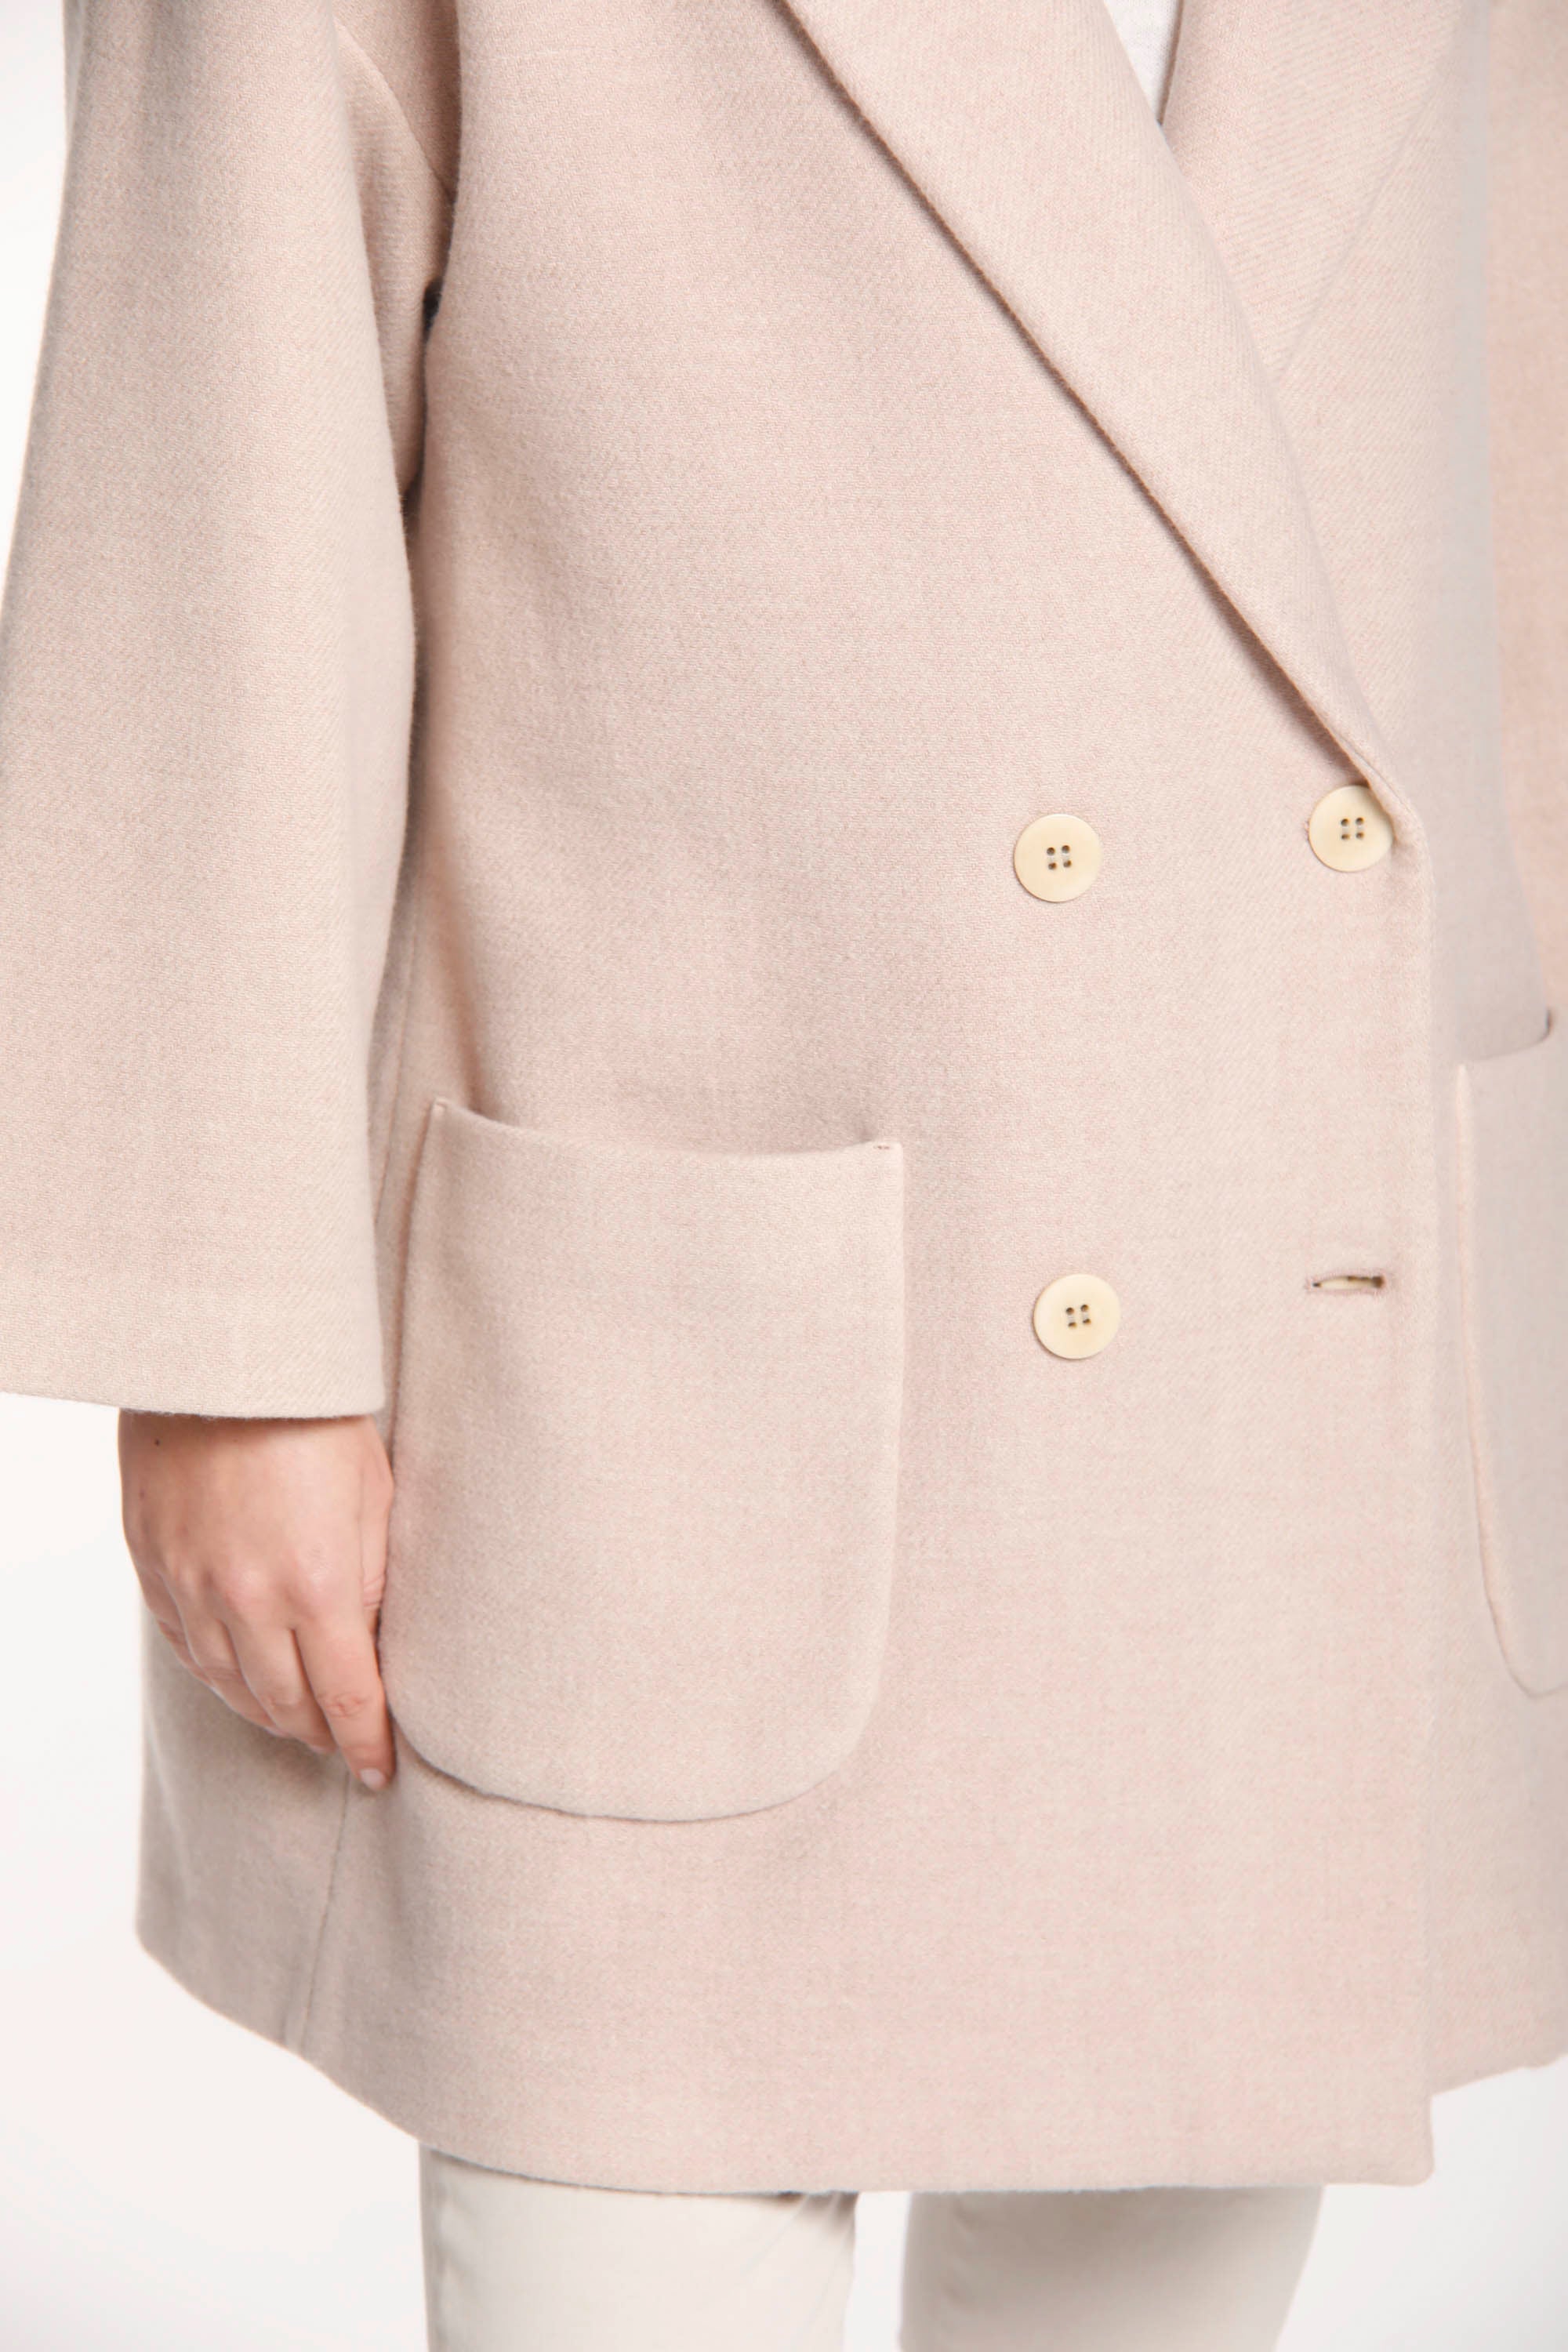 Immagine 3 di cappotto da donna in lana color rosa chiaro modello Noemi di Mason's